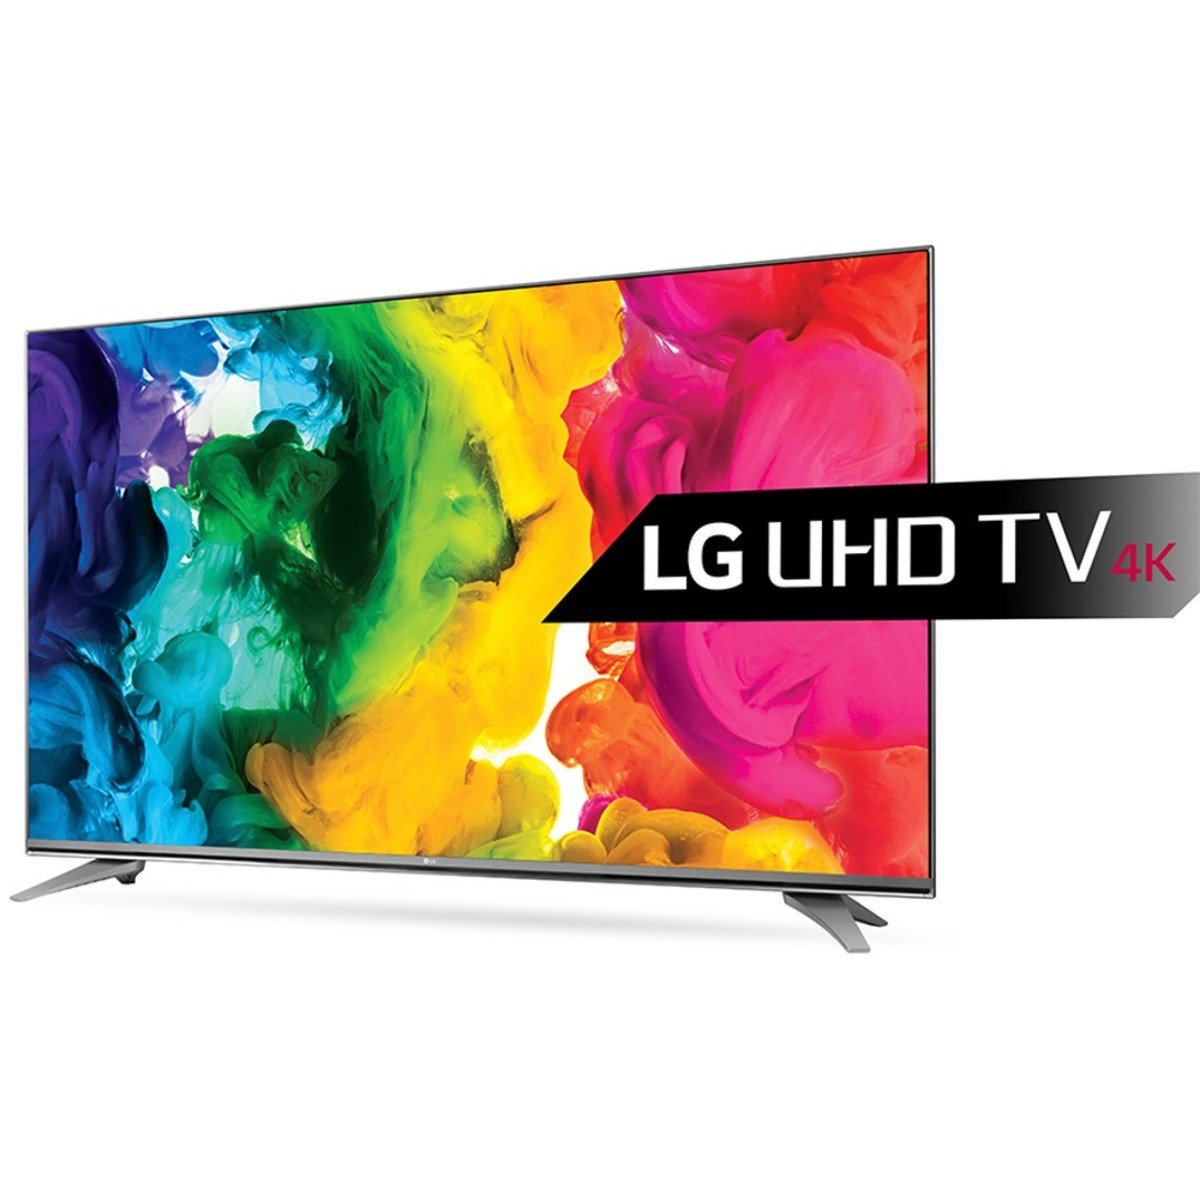 LG Ultra HD Smart LED TV 49UH750V 49inch